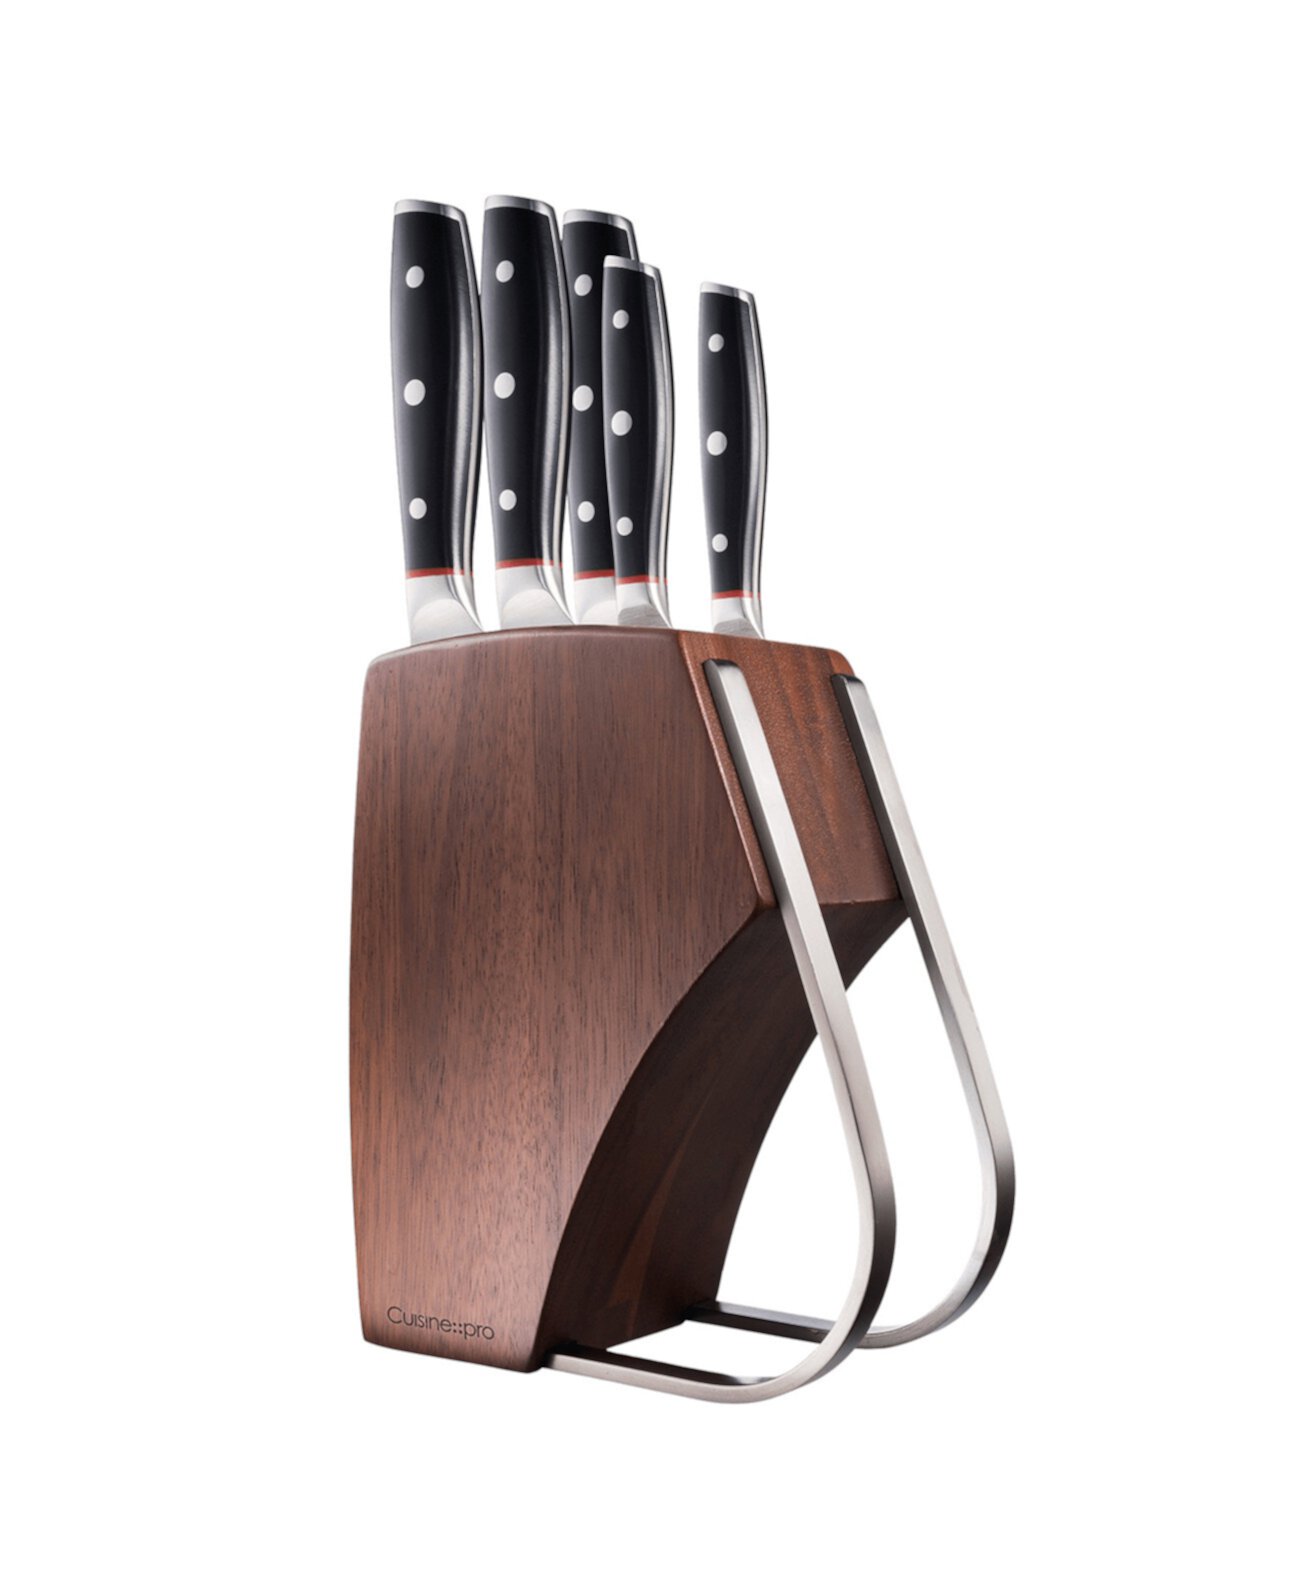 Набор блоков для ножей Iconix Holz, 6 предметов Cuisine::pro®